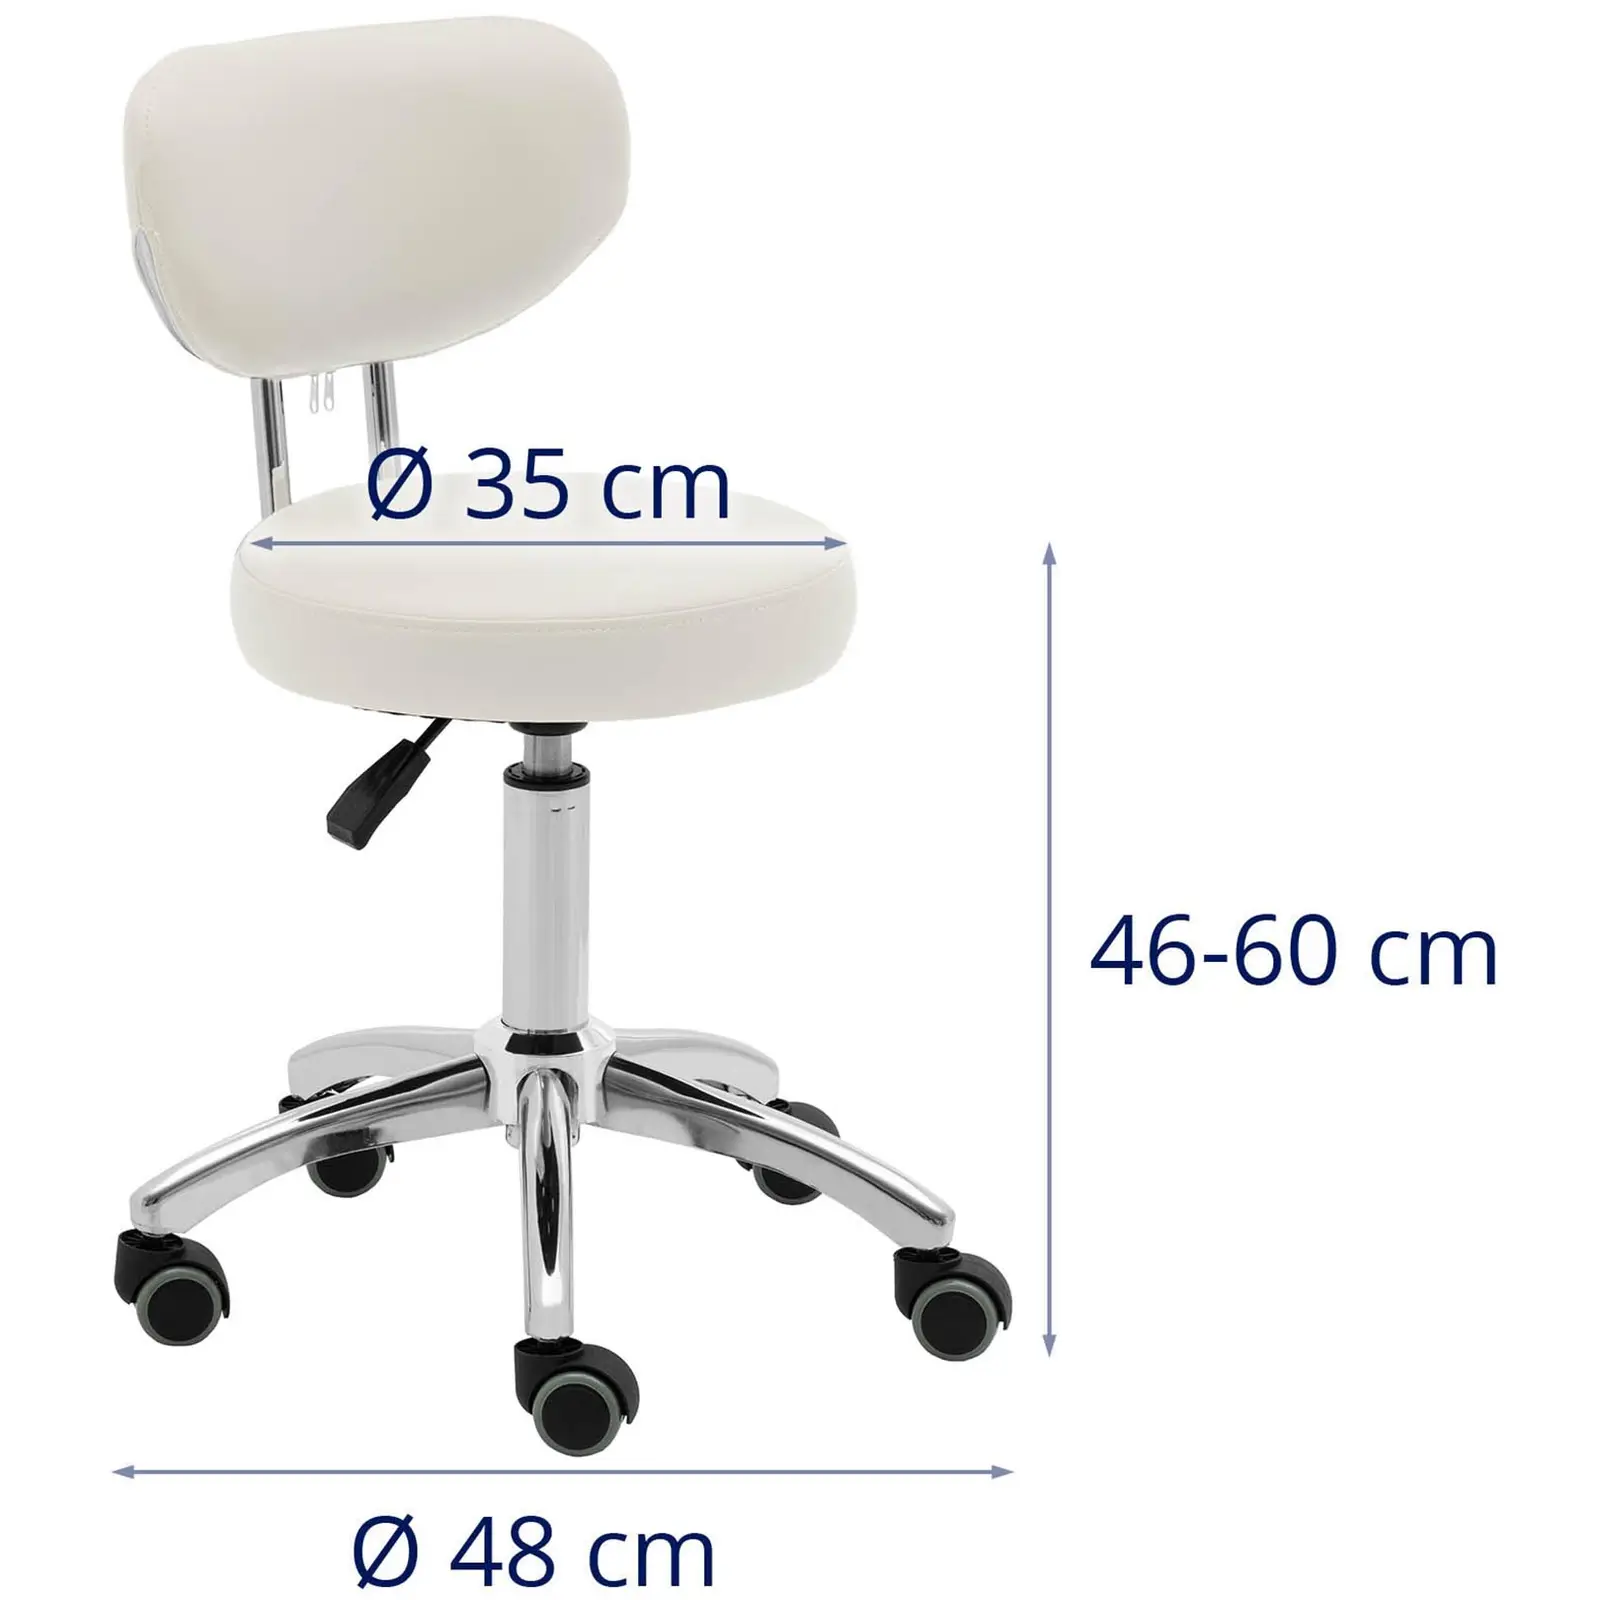 Produtos recondicionados Cadeira para salão de beleza - 46 - 60 cm - 150 kg - bege